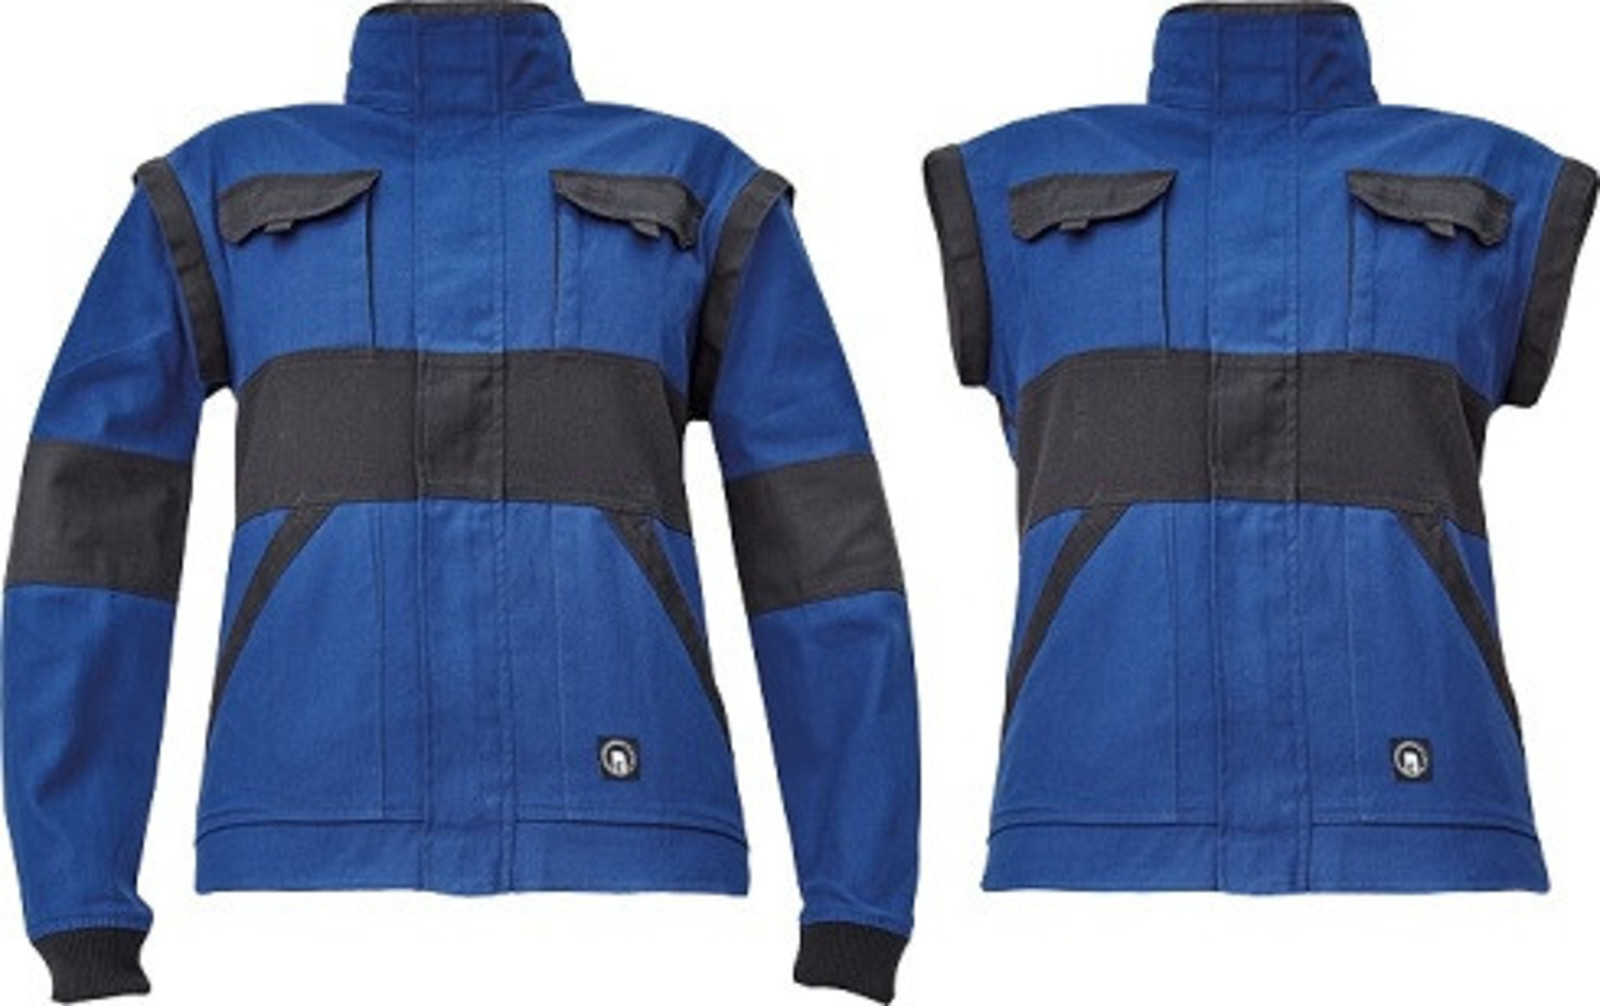 Dámska bavlnená montérková bunda Cerva Max Neo Lady 2v1 - veľkosť: 34, farba: modrá/čierna